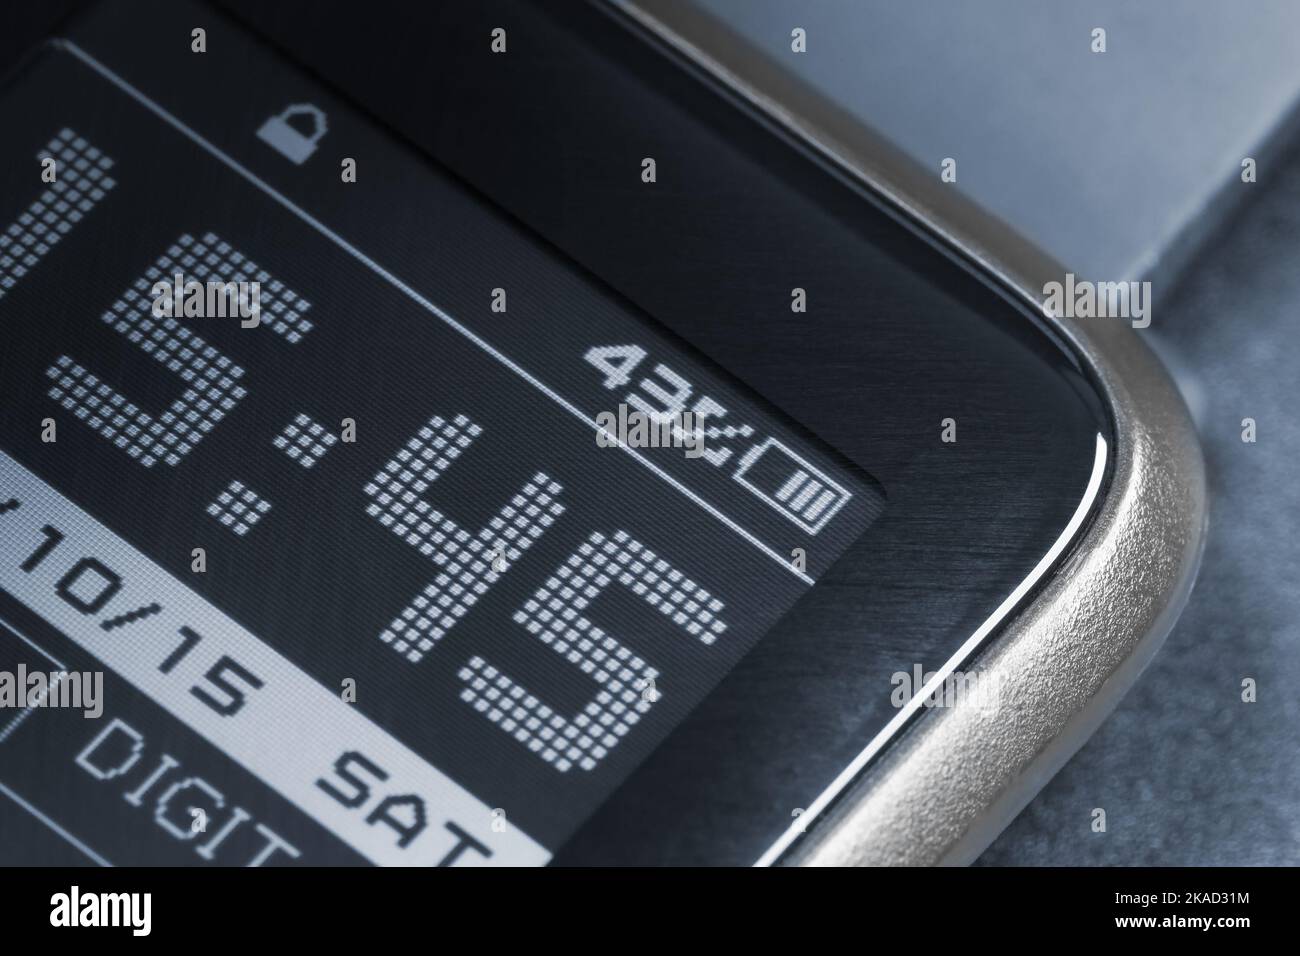 Ein Fragment des Bildschirms einer Smart Watch, das die Zeit anzeigt. Makrofotografie. Stockfoto